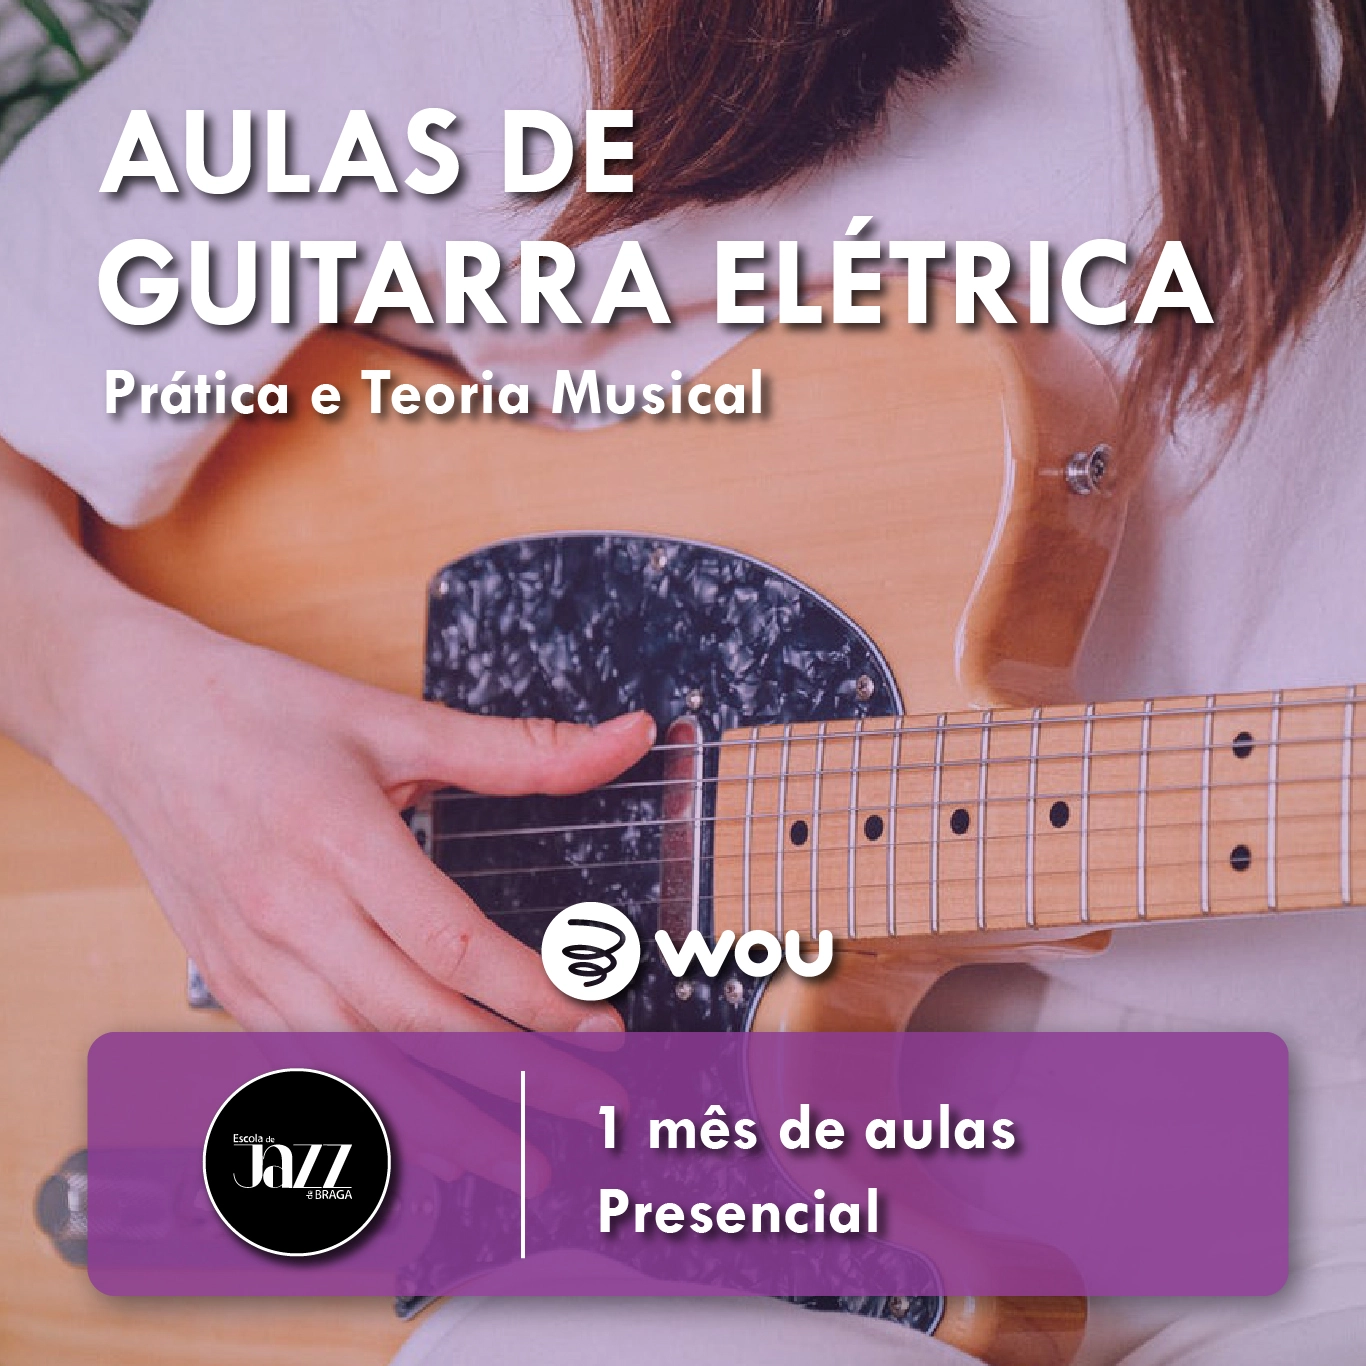 Aulas de Guitarra Elétrica em Braga